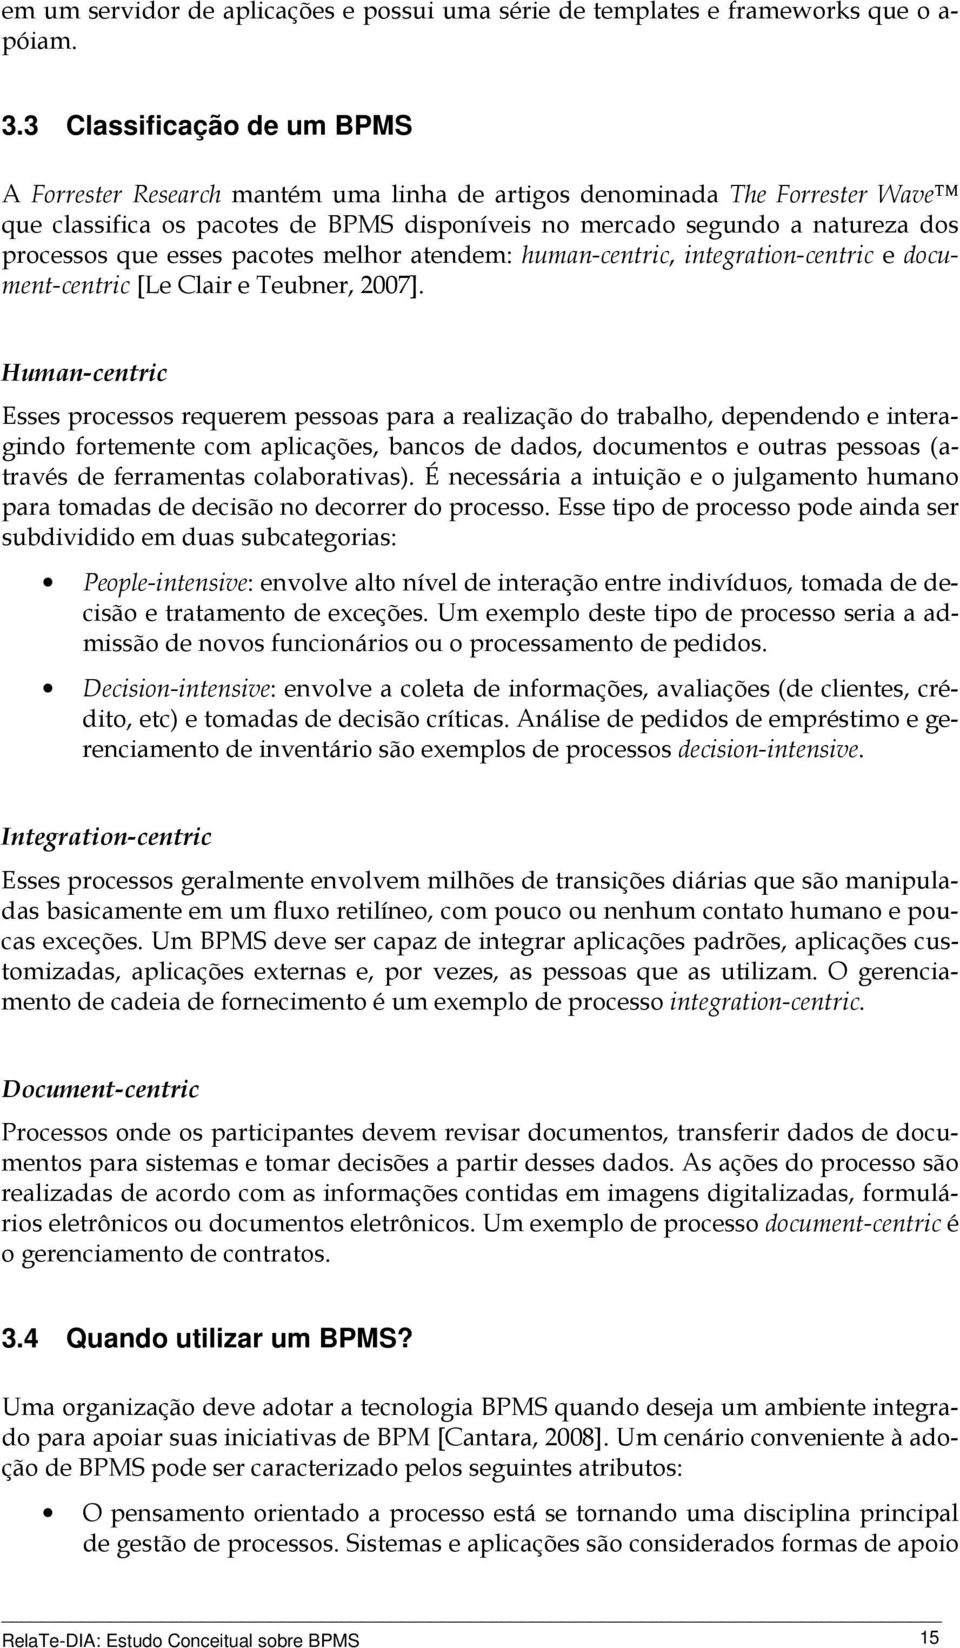 esses pacotes melhor atendem: human-centric, integration-centric e document-centric [Le Clair e Teubner, 2007].